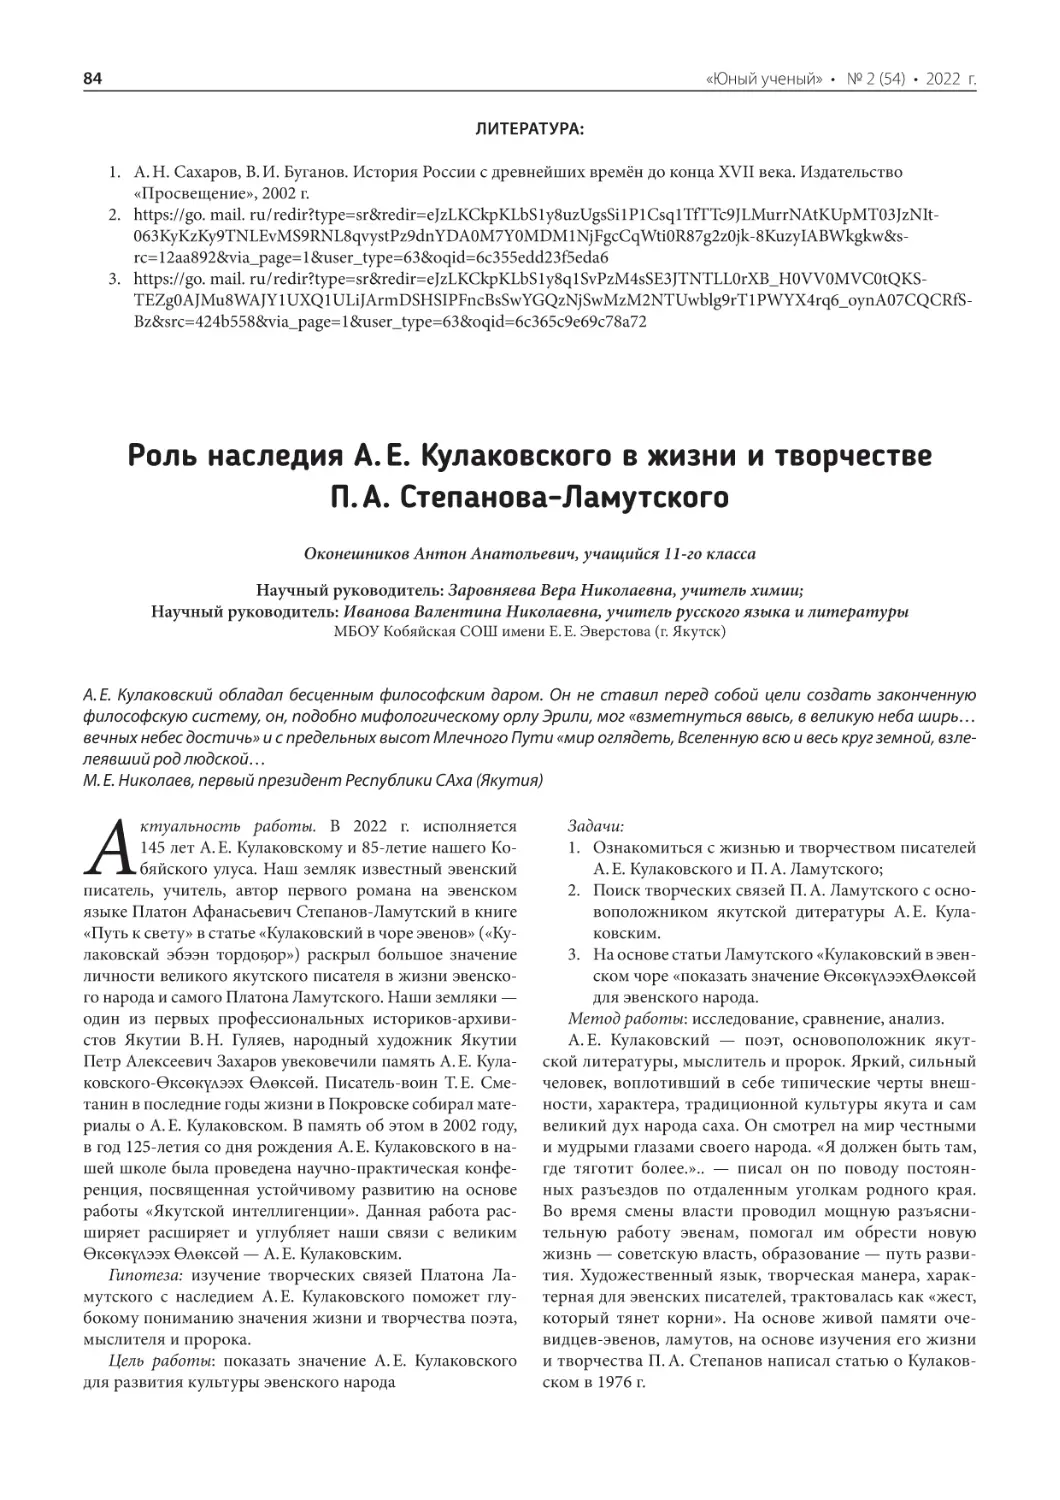 Роль наследия А. Е. Кулаковского в жизни и творчестве П. А. Степанова-Ламутского